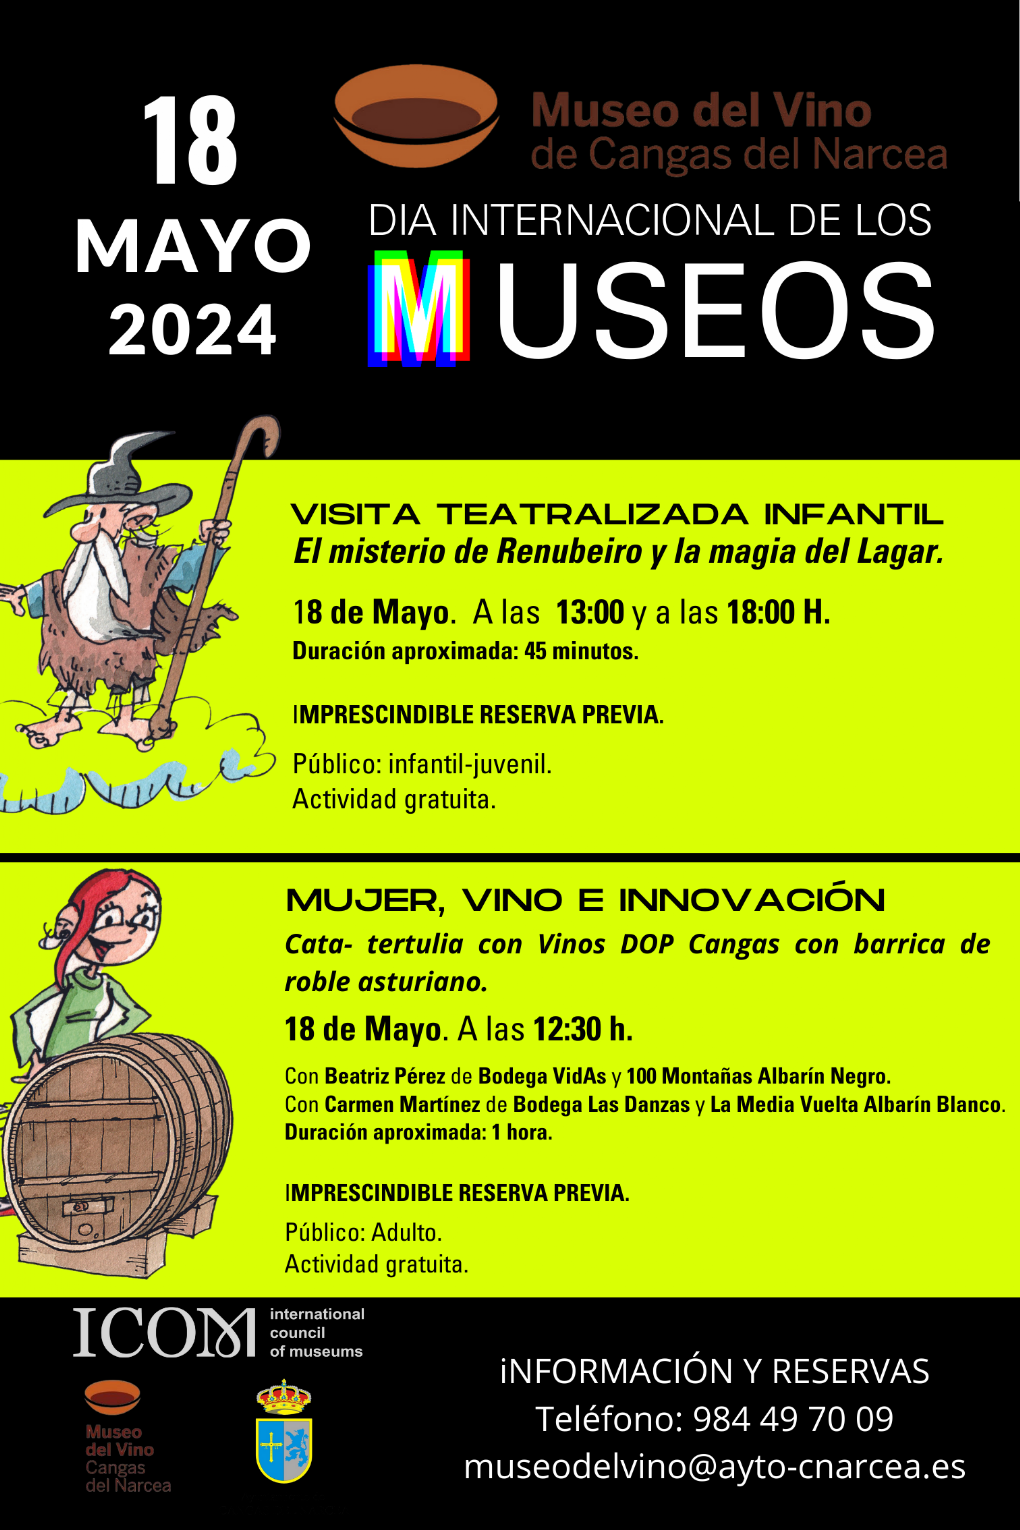 Da Internacional de los Museos en el Museo del Vino de Cangas del Narcea